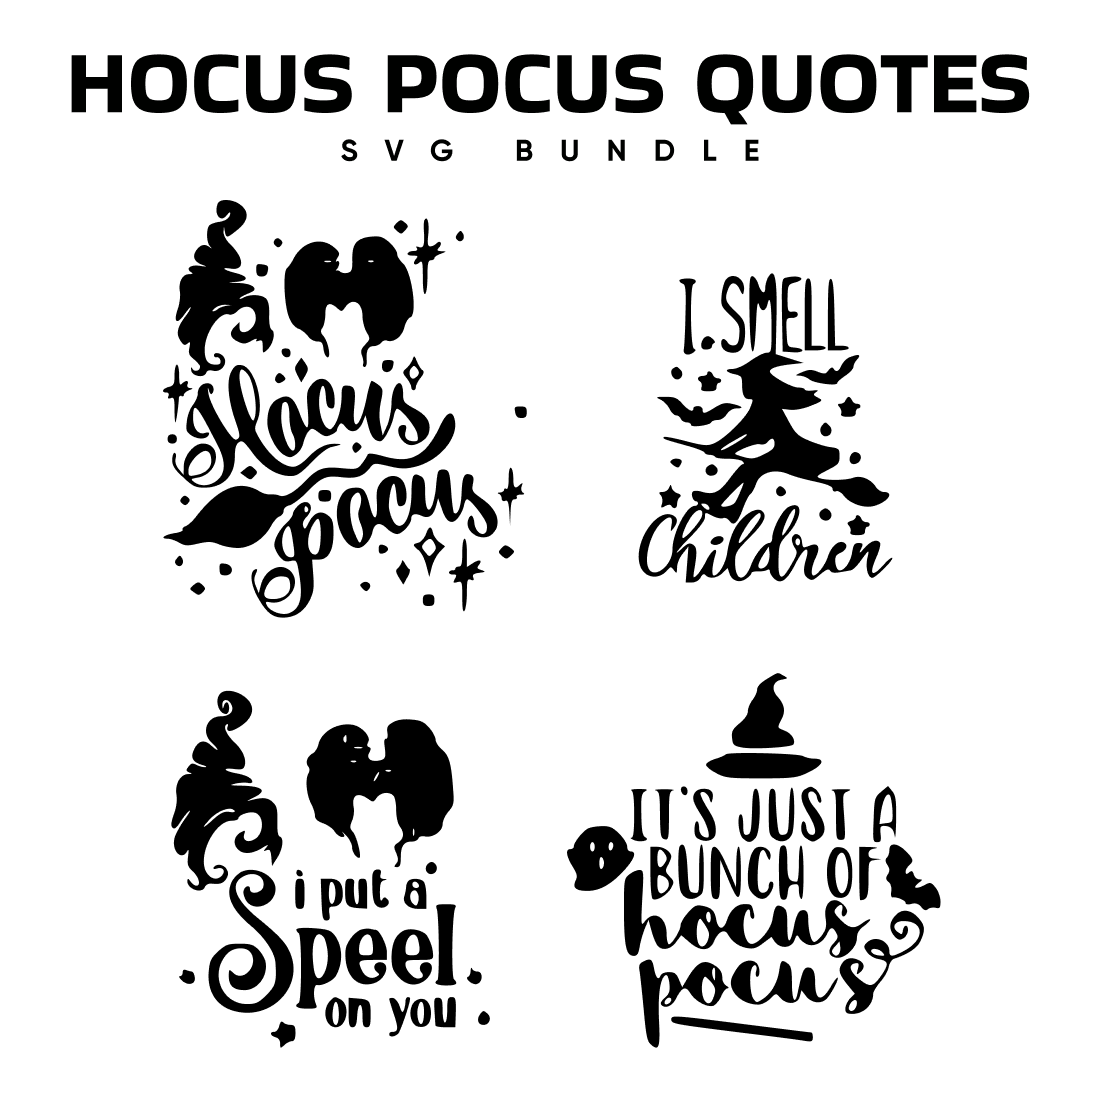 Hocus Pocus Quotes SVG.